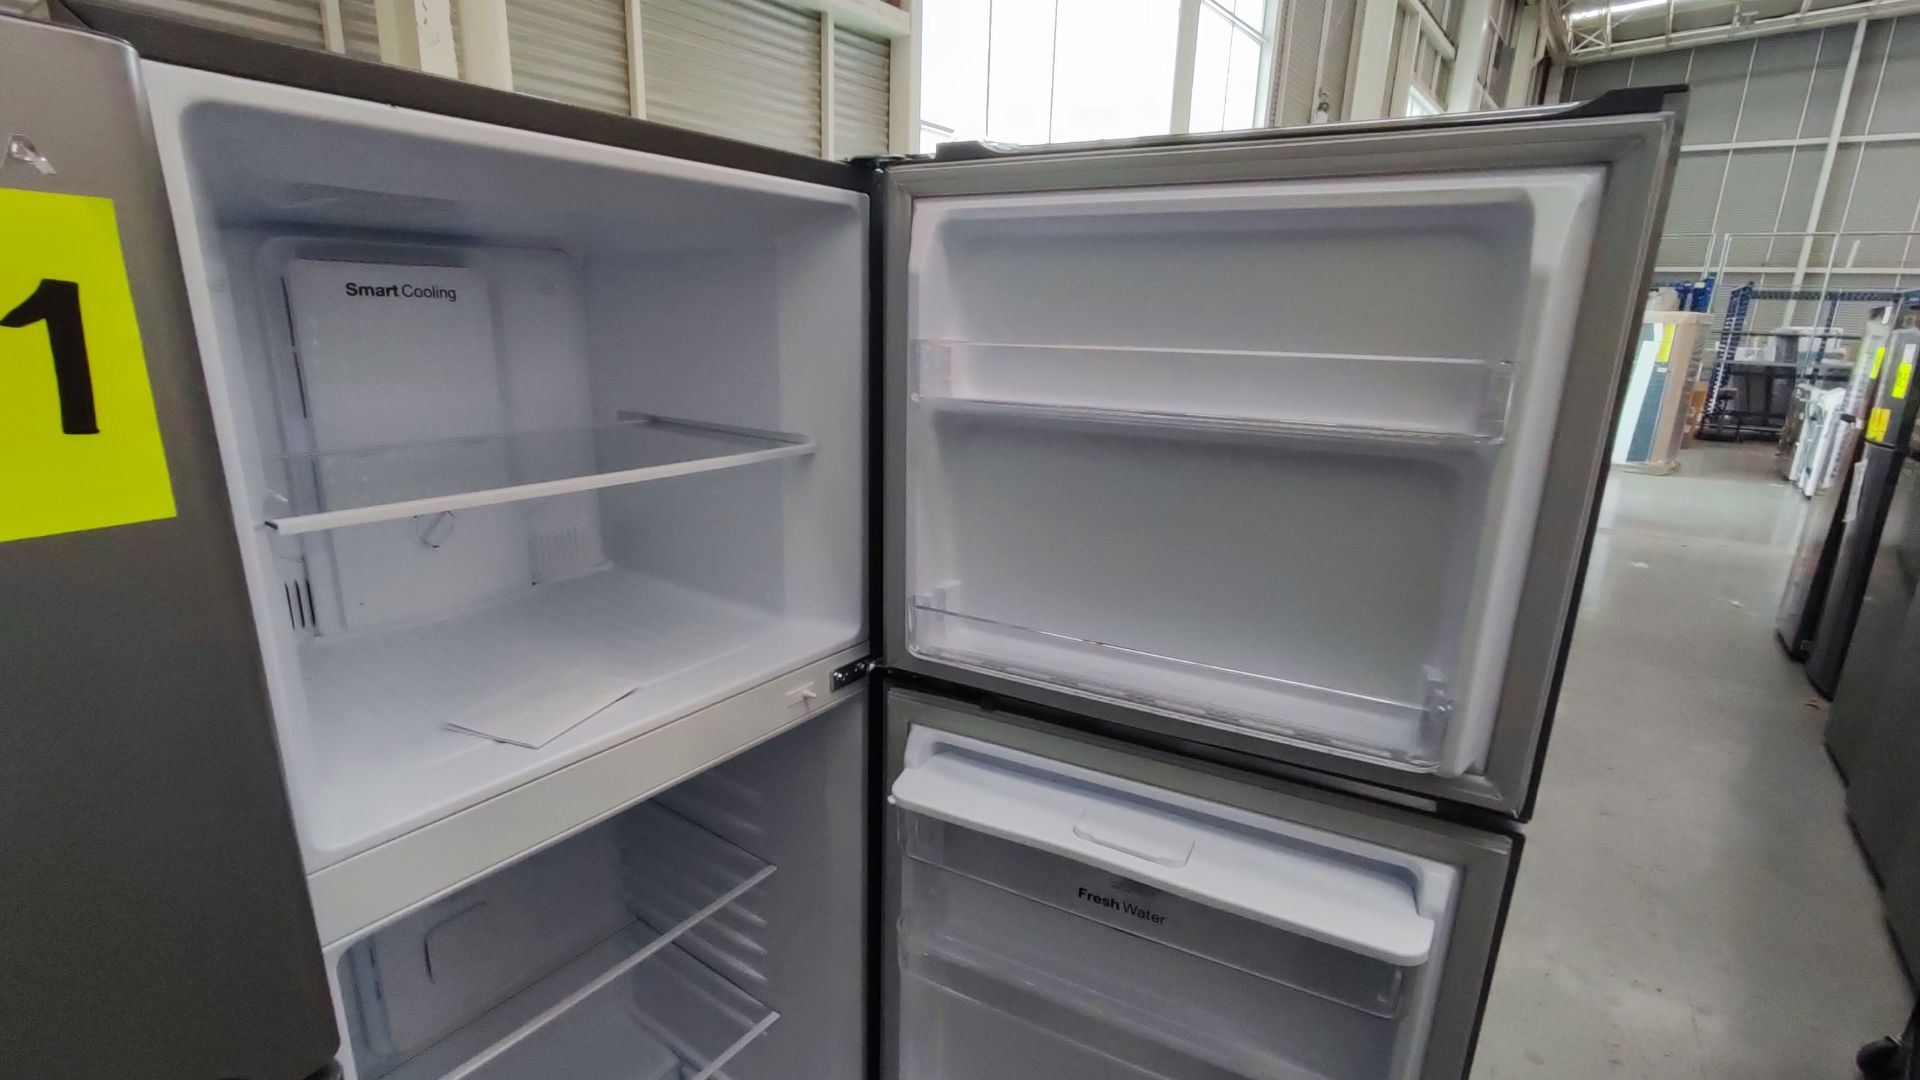 Lote Conformado por 2 Refrigeradores, Contiene; 1 Refrigerador con Dispensador de Agua Marca Whirlp - Image 10 of 13